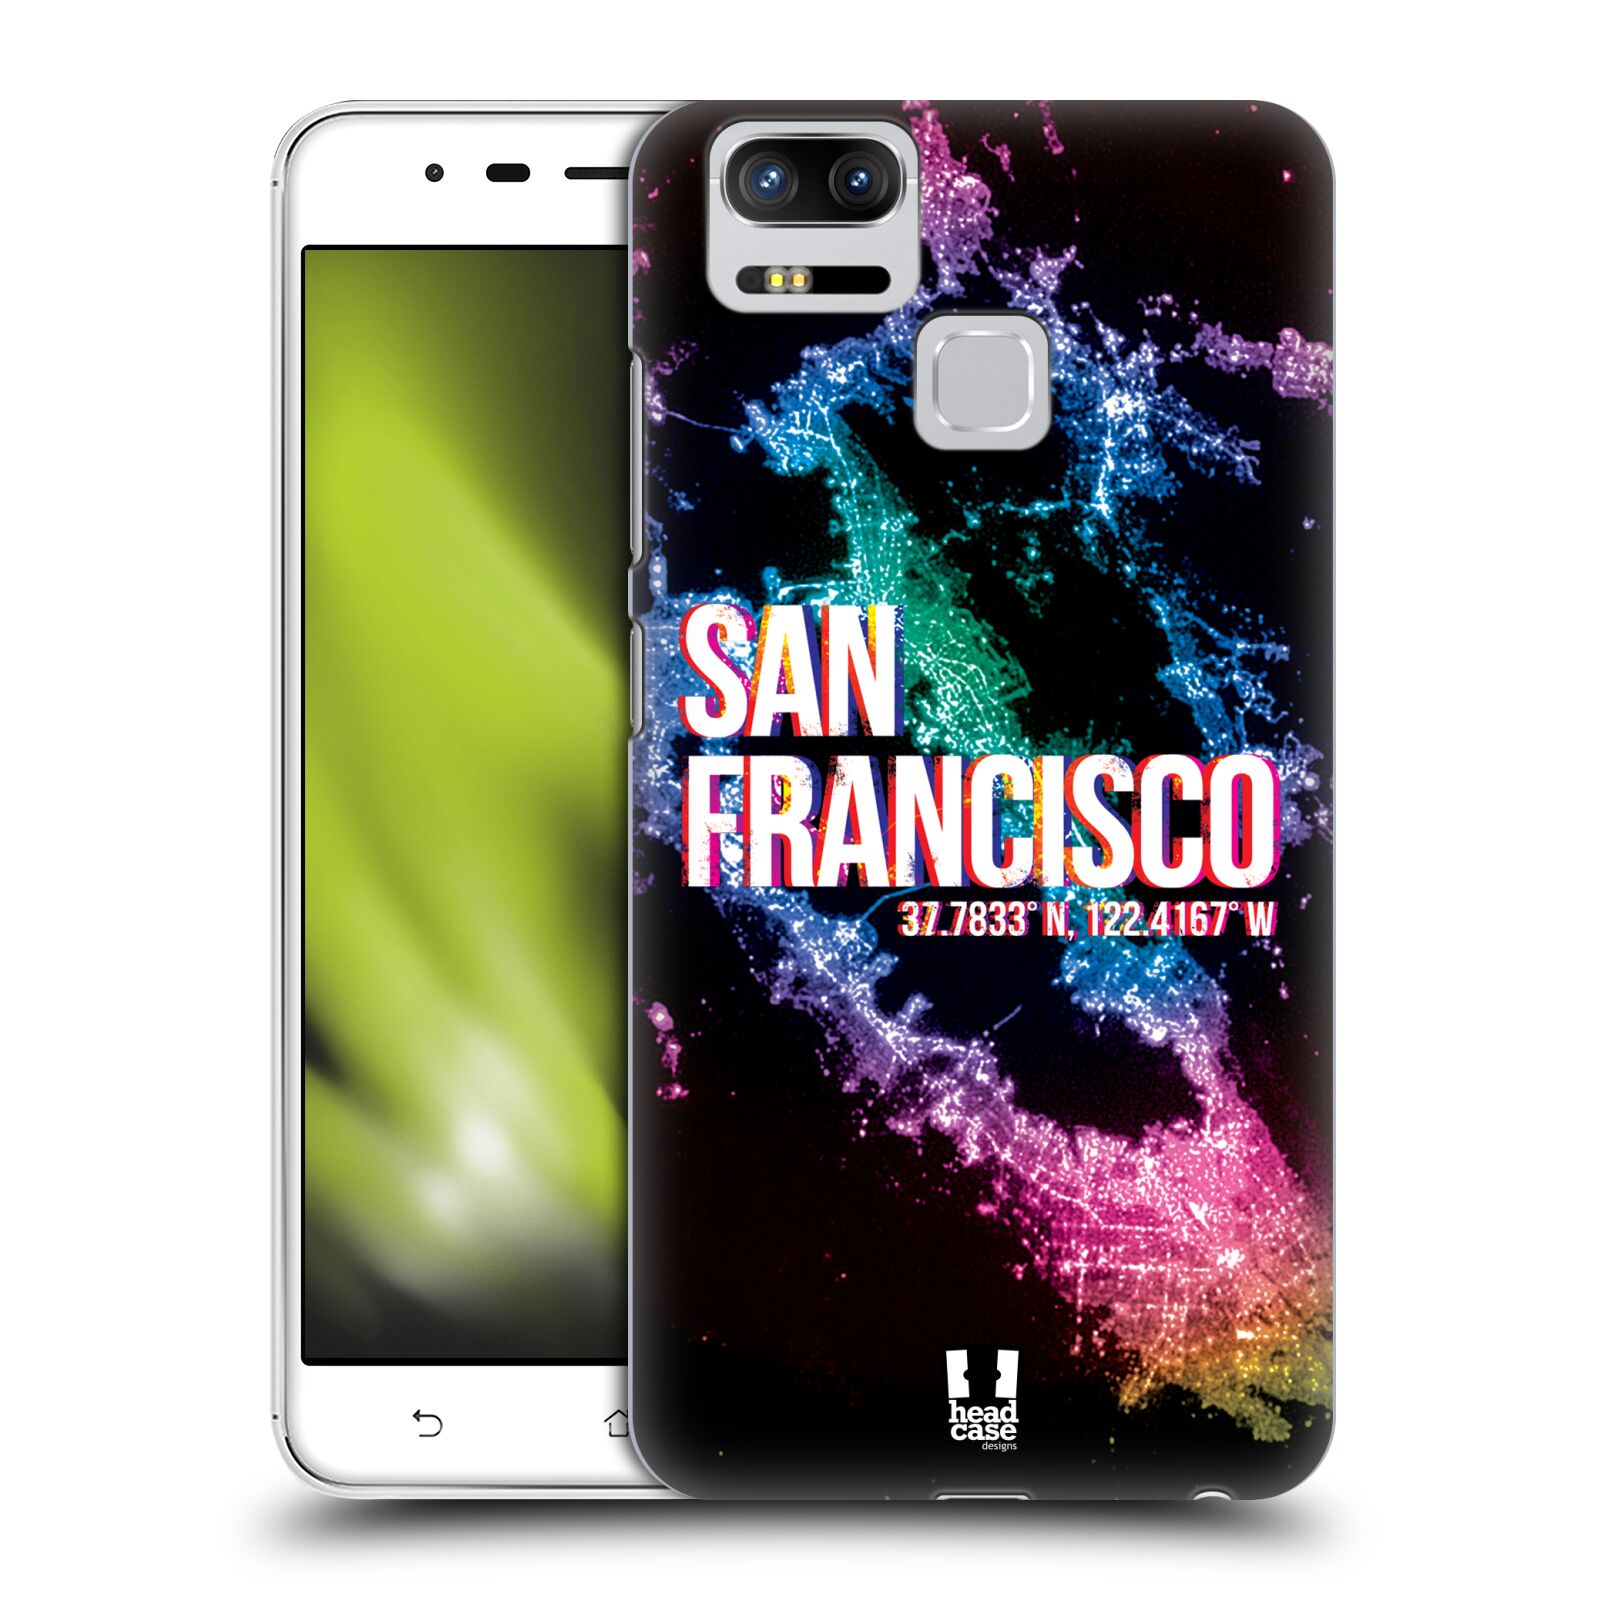 HEAD CASE plastový obal na mobil Asus Zenfone 3 Zoom ZE553KL vzor Světla známých měst, Satelitní snímky USA, SAN FRANCISCO